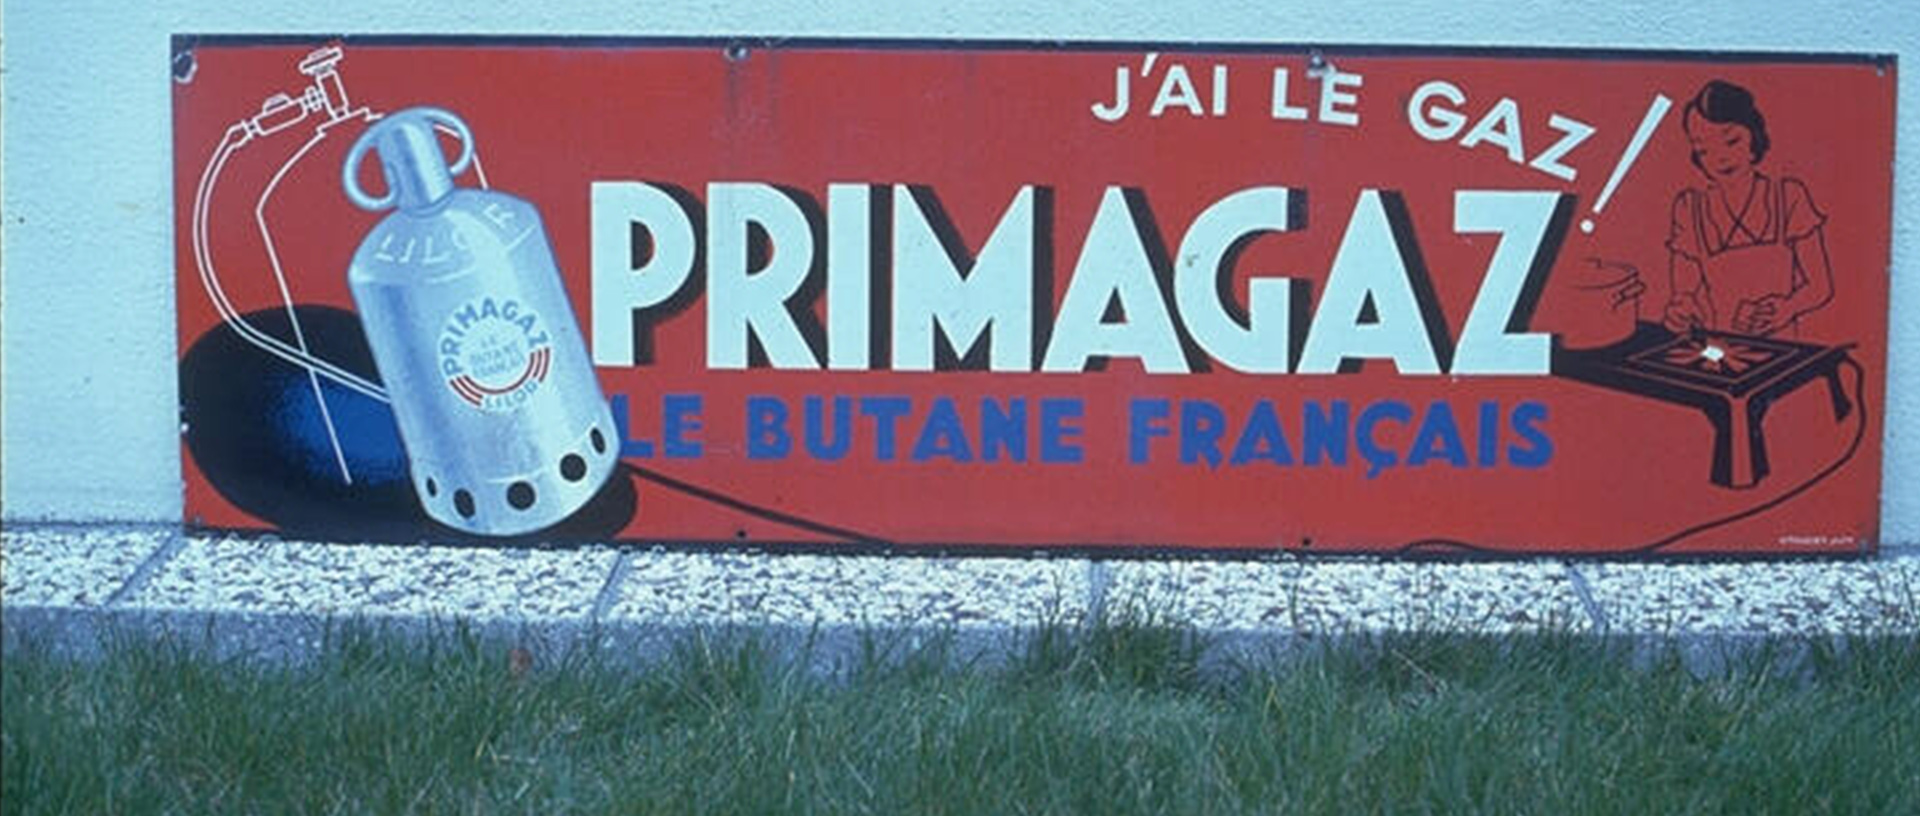 Plaque publicitaire "J'ai le gaz Primagaz" (© primagaz.fr)